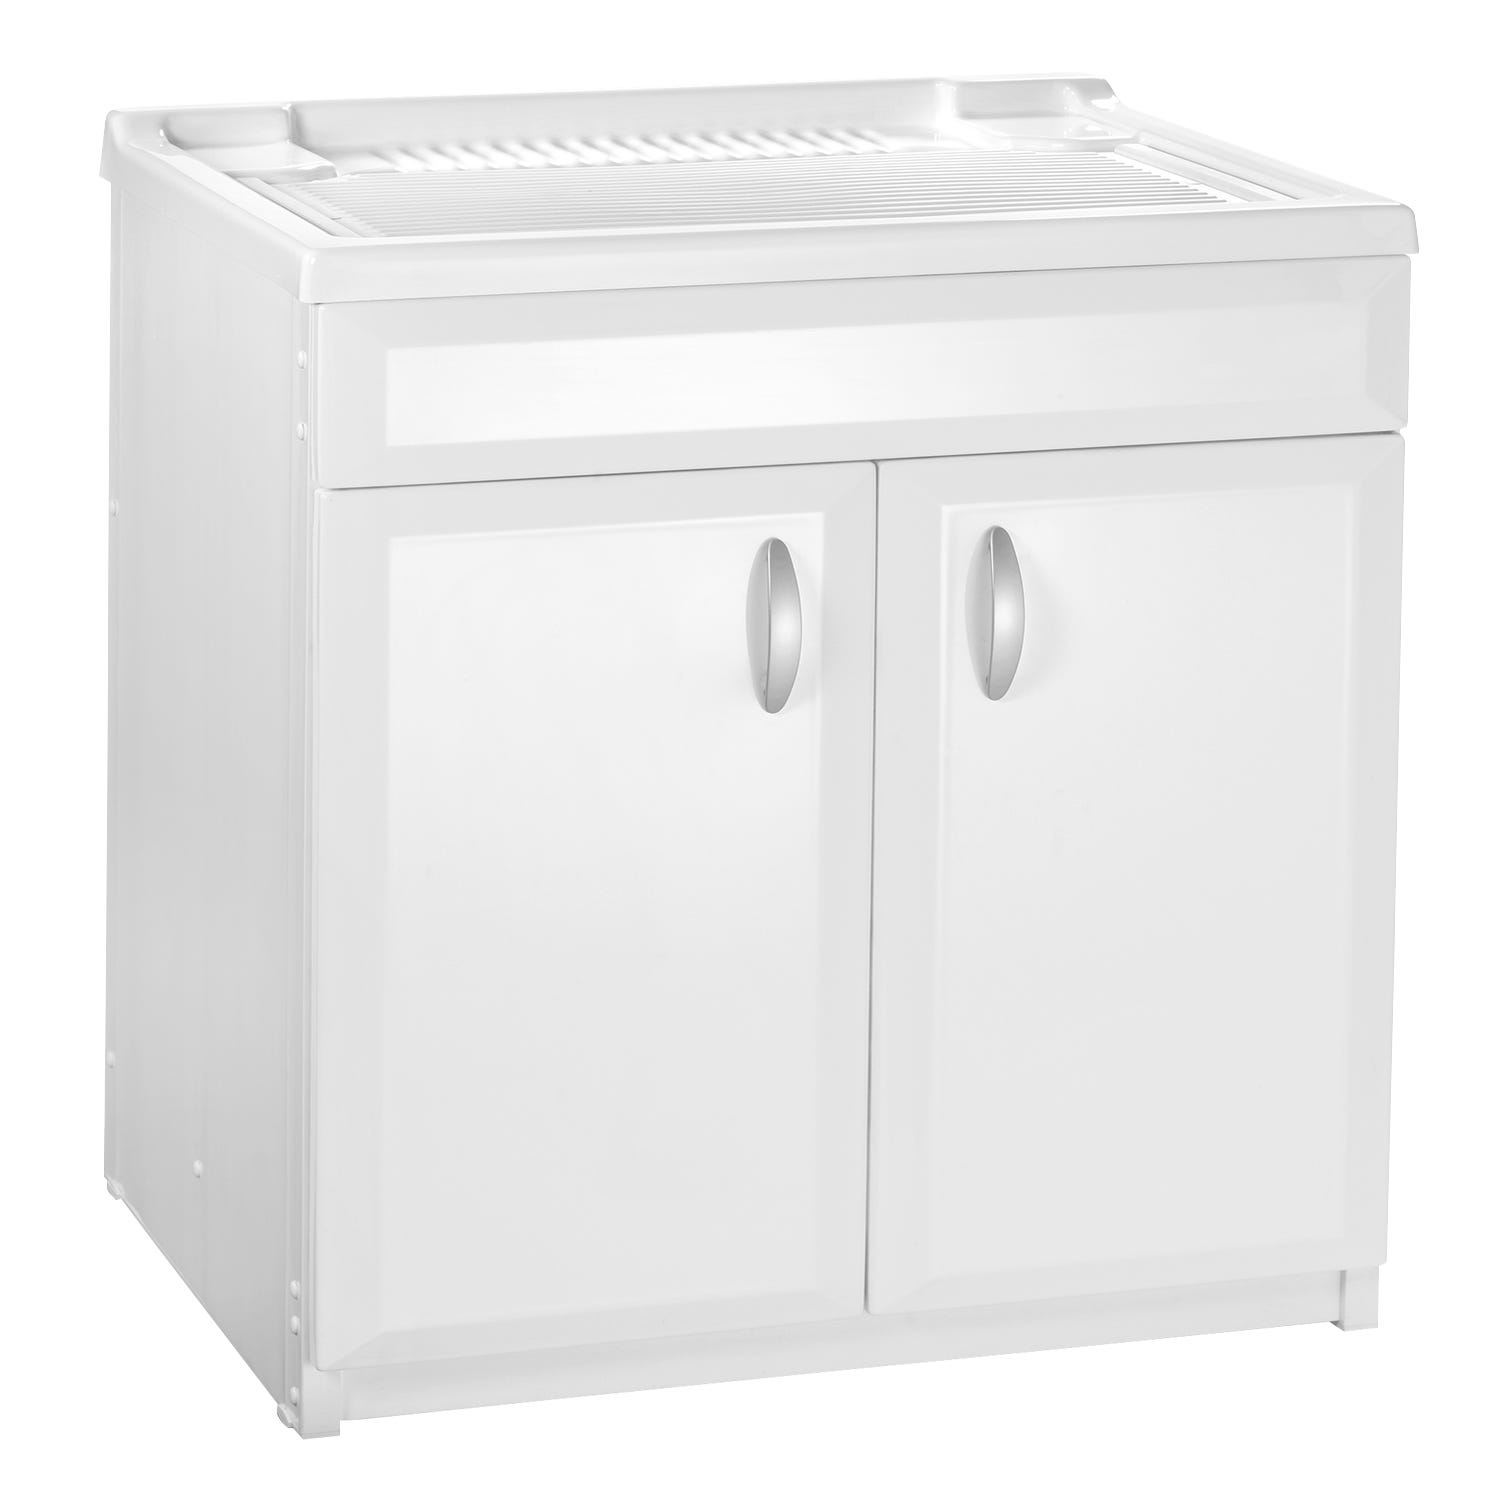 Mueble para lavadora con lavadero de resina 45x50 para interior y exterior  con fregador